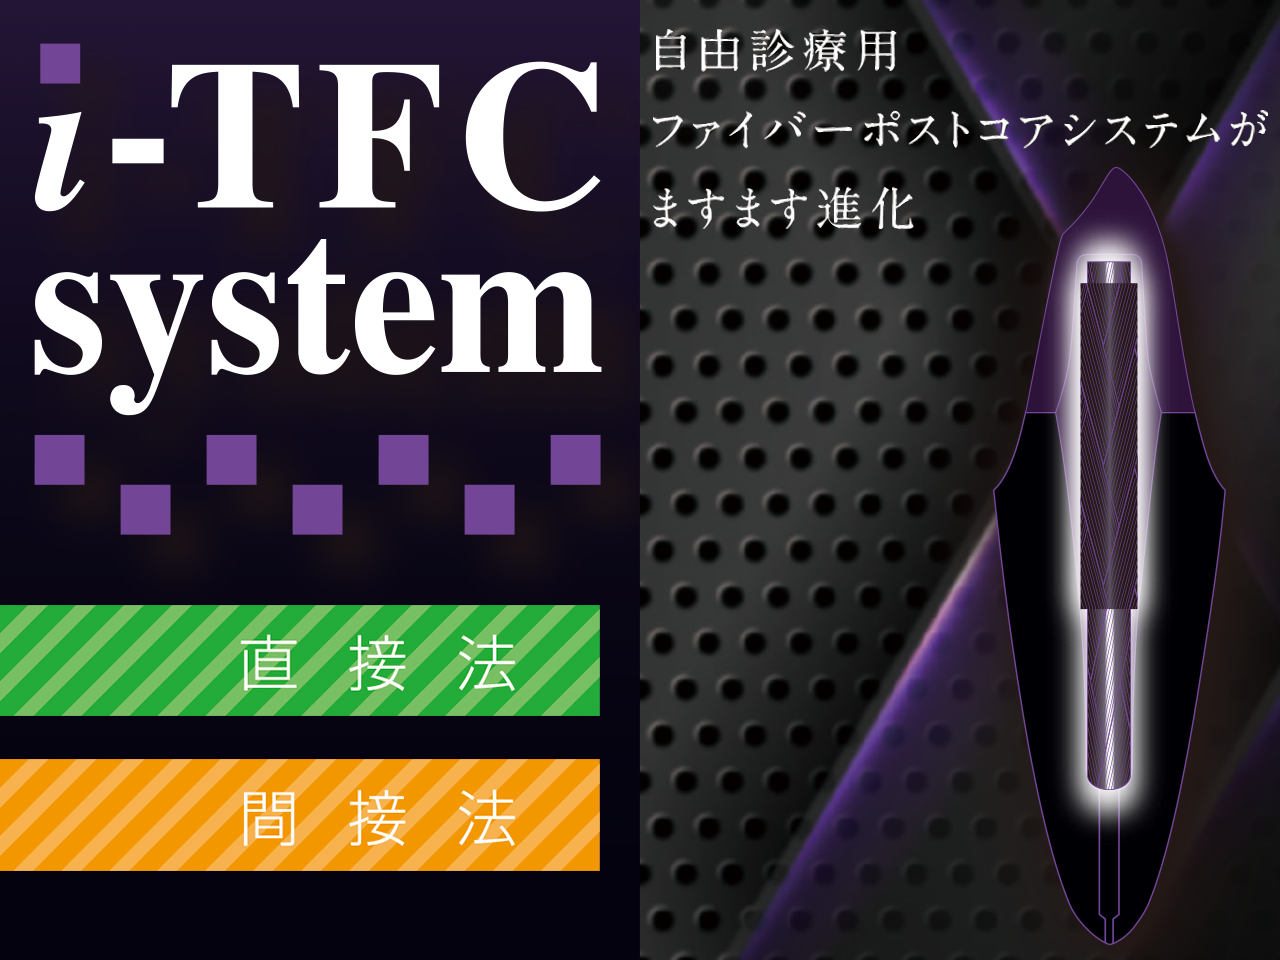 i-TFC system 自由診療用 ファイバーポストコアシステムがますます進化